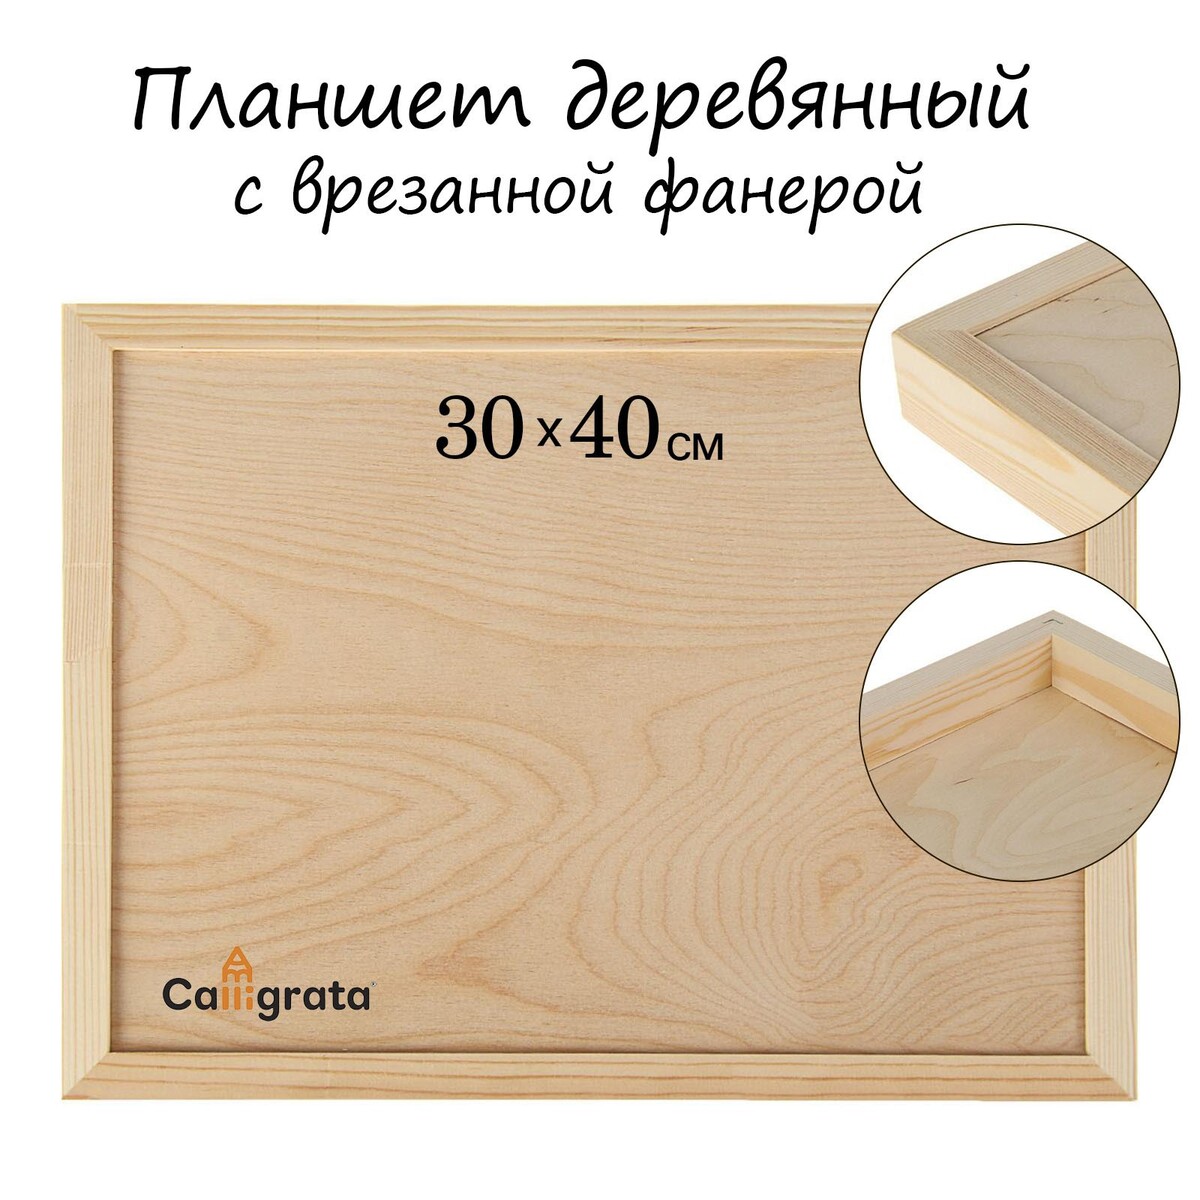 Планшет деревянный, с врезанной фанерой, 30 х 40 х 3,5 см, глубина 0.5 см, сосна шумовка для казана узбекская 49см диаметр 12 5см глубина 5 5см